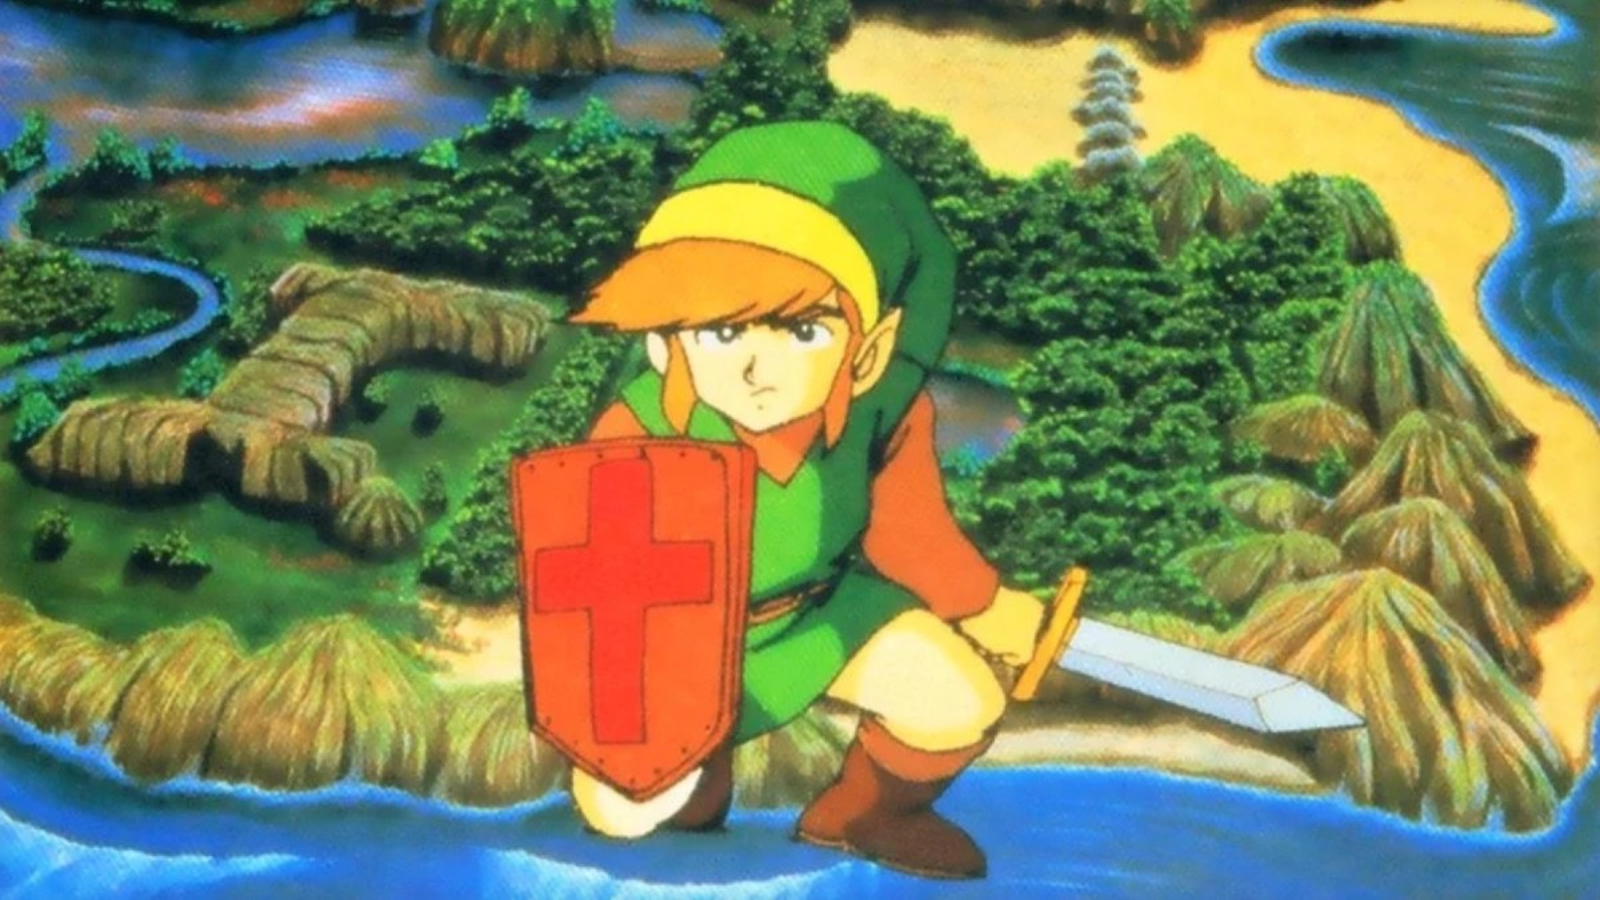 Metacritic - The Legend of Zelda: Link's Awakening